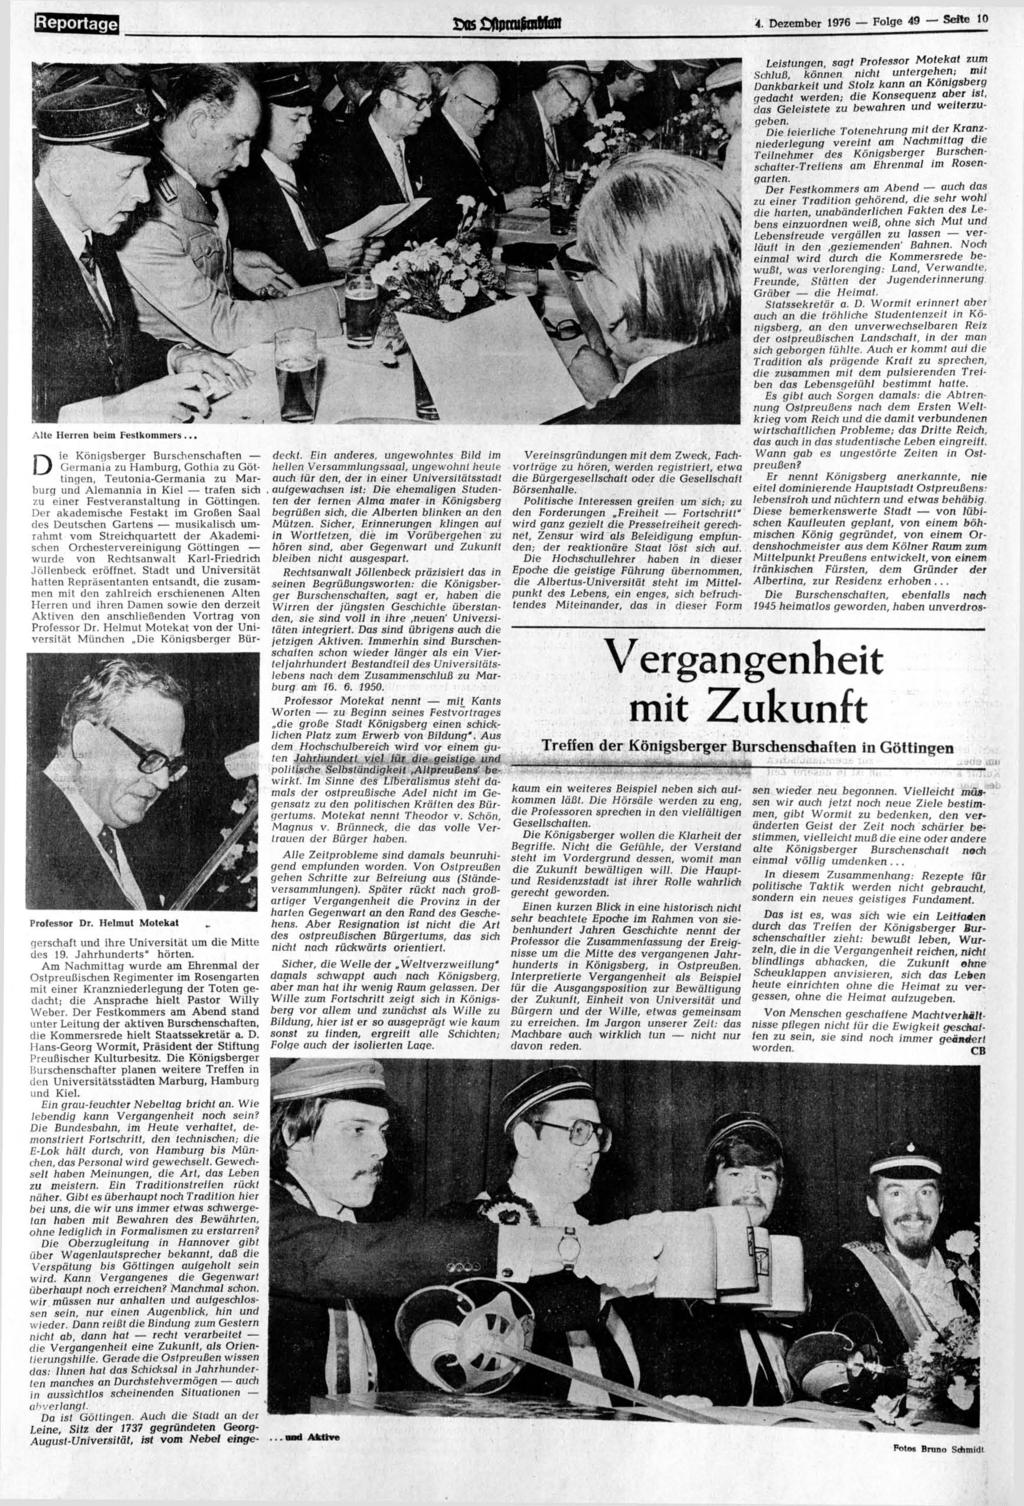 Reportage «5 CflprtufmMün 4. Dezember 1976 Folge 49 Seite 10 Alte Herren beim Festkommers... D ie Königsberger Burschenschaften deckt.